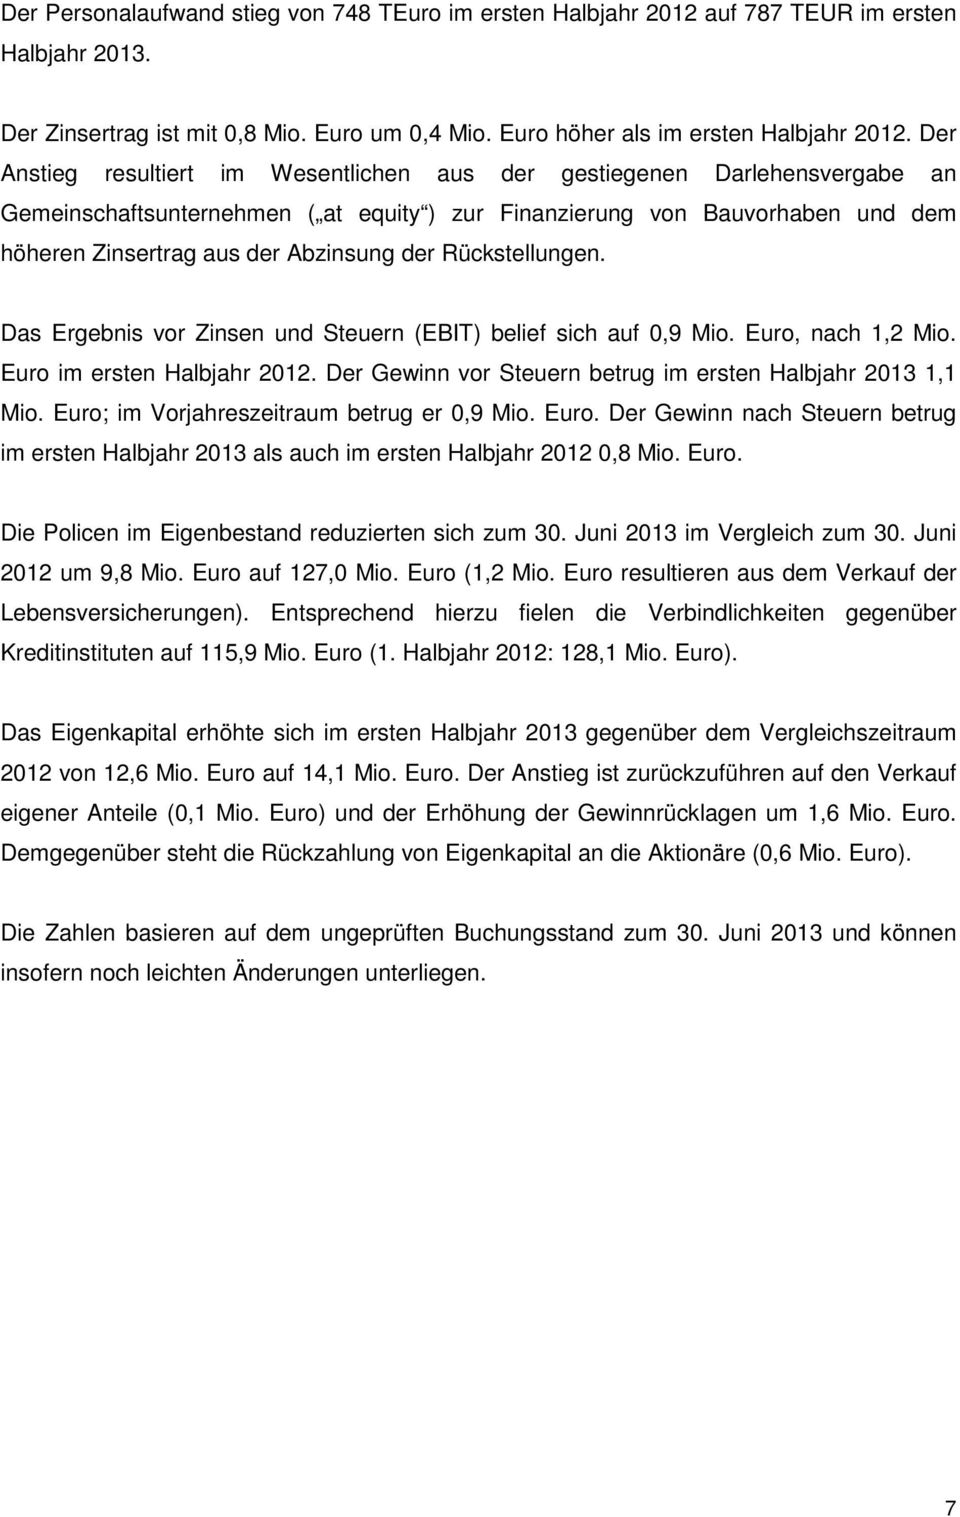 Rückstellungen. Das Ergebnis vor Zinsen und Steuern (EBIT) belief sich auf 0,9 Mio. Euro, nach 1,2 Mio. Euro im ersten Halbjahr 2012. Der Gewinn vor Steuern betrug im ersten Halbjahr 2013 1,1 Mio.